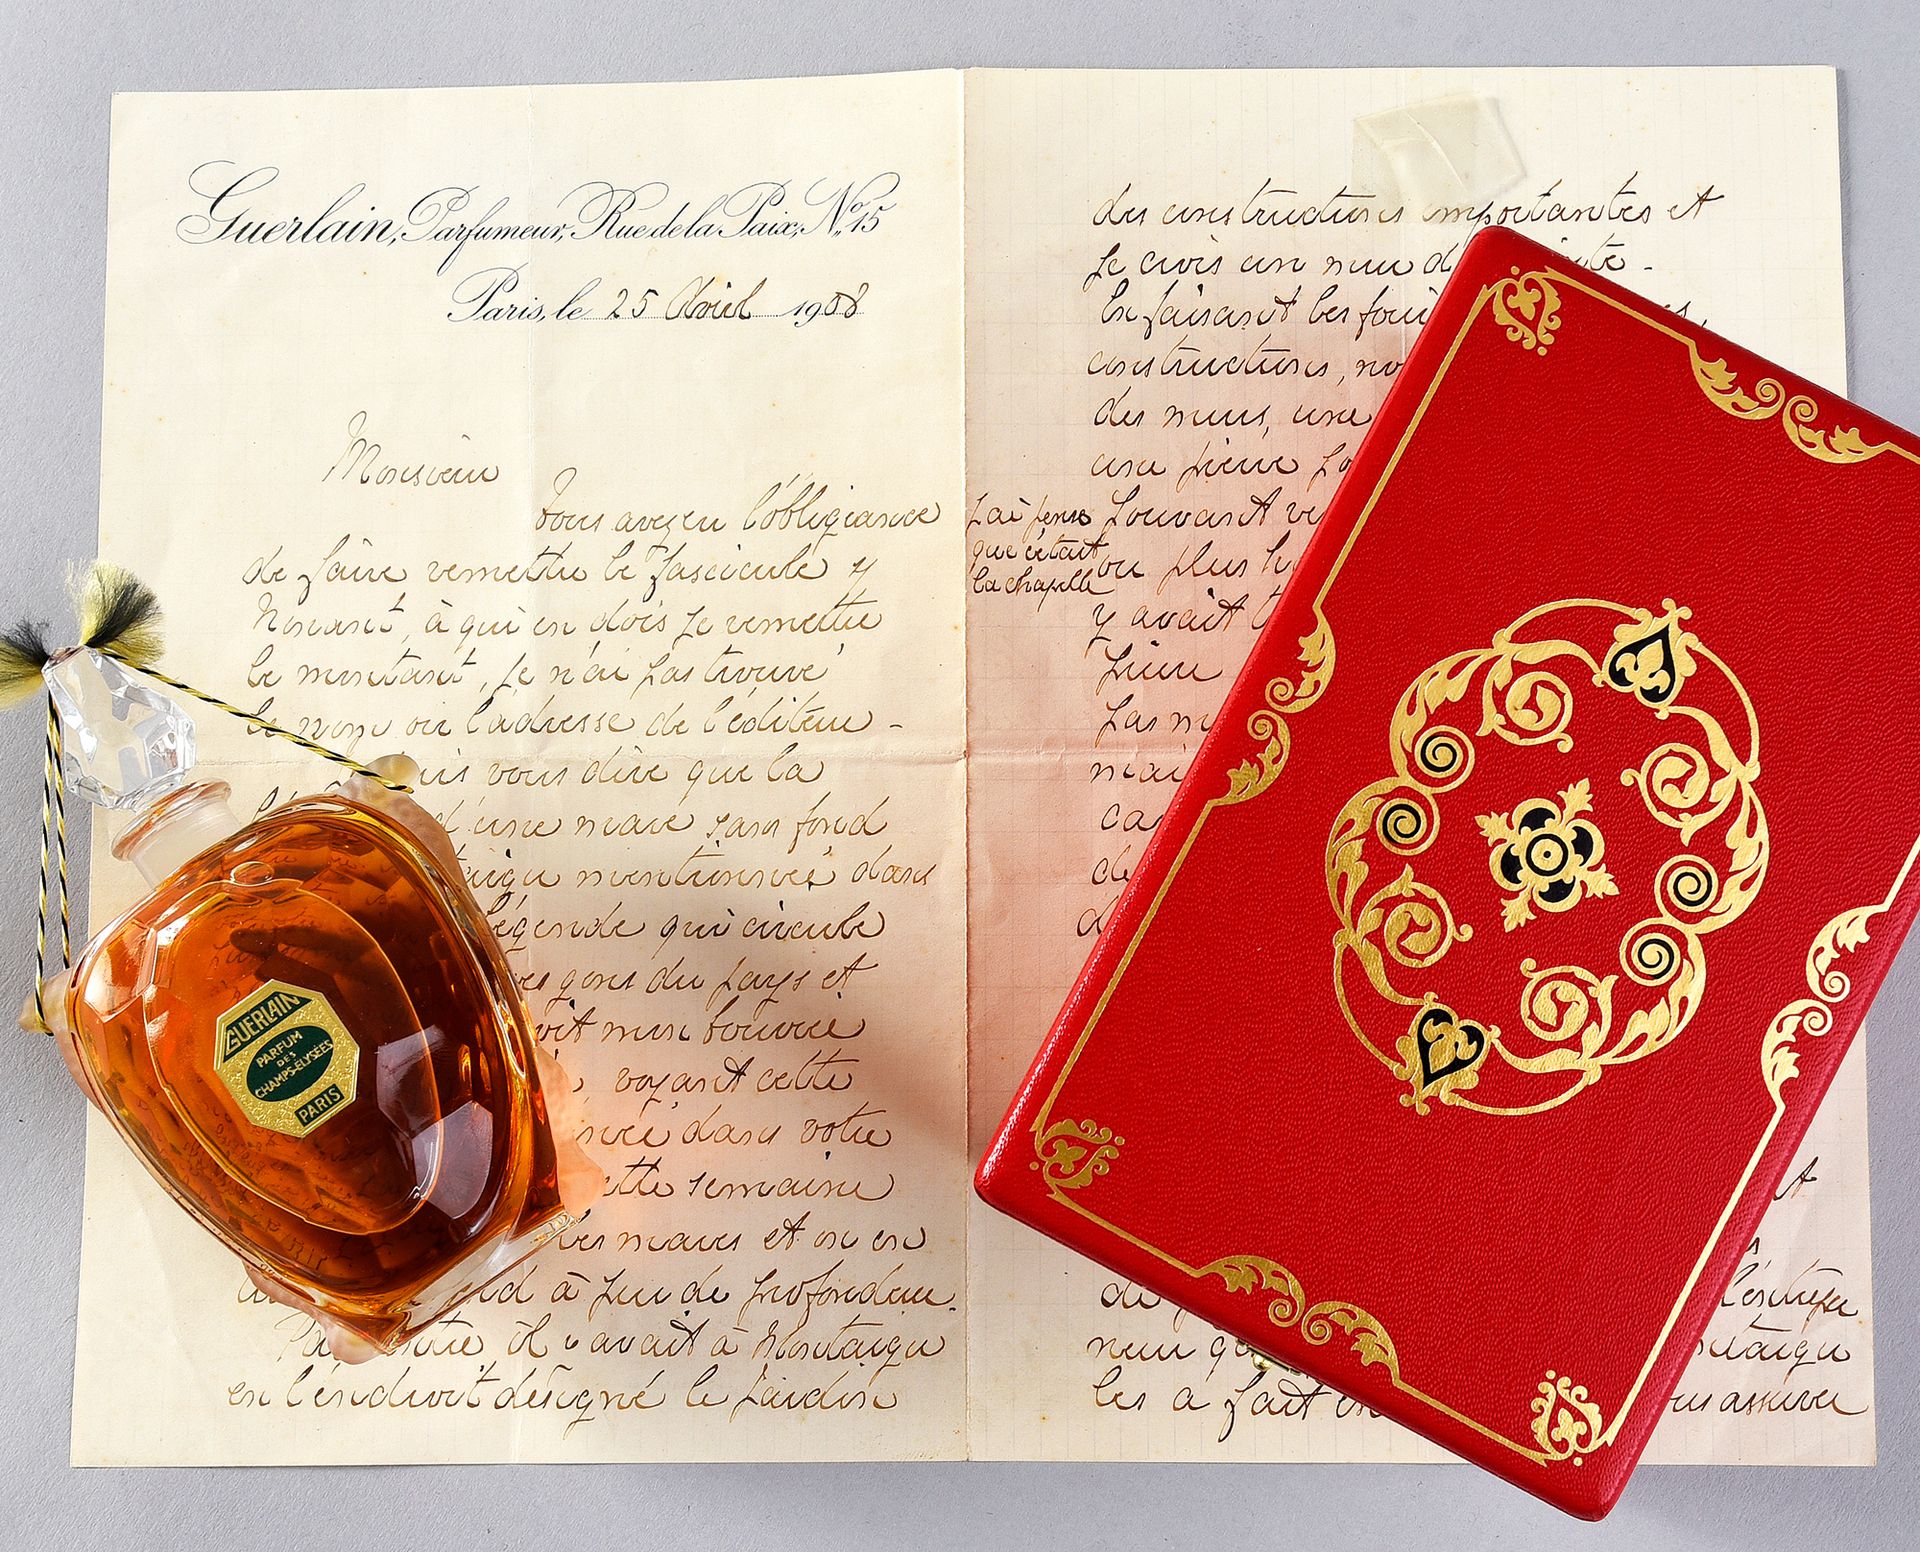 Guerlain - 25 Avril 1908 - Lettre manuscrite de Gabriel Guerlain relatant les tr&hellip;